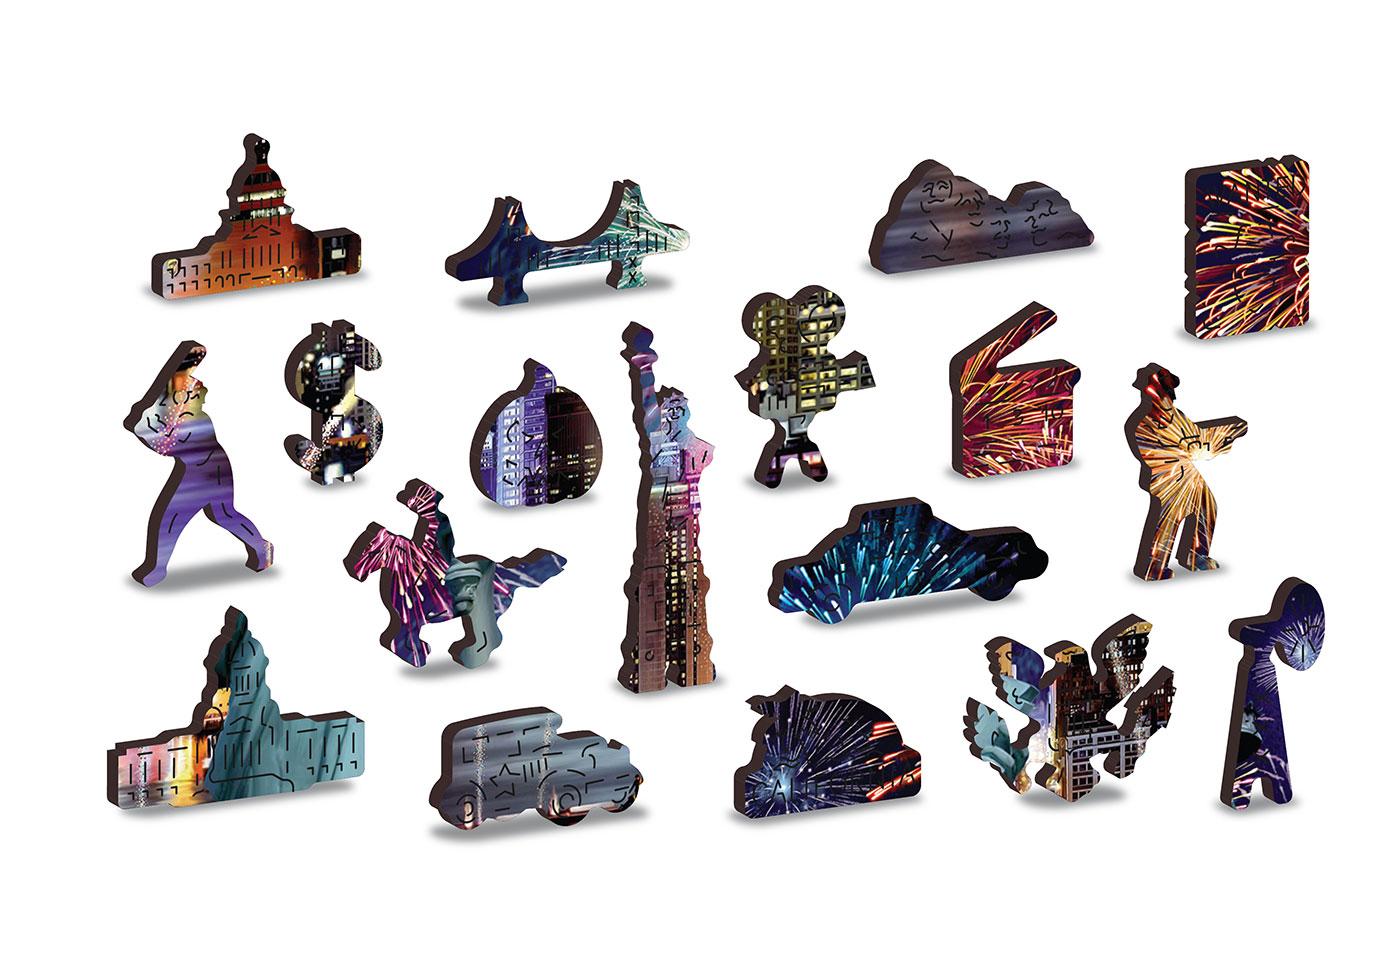 Drewniane Puzzle z figurkami – Nowy Jork nocą rozm. XL, 1000 elementów